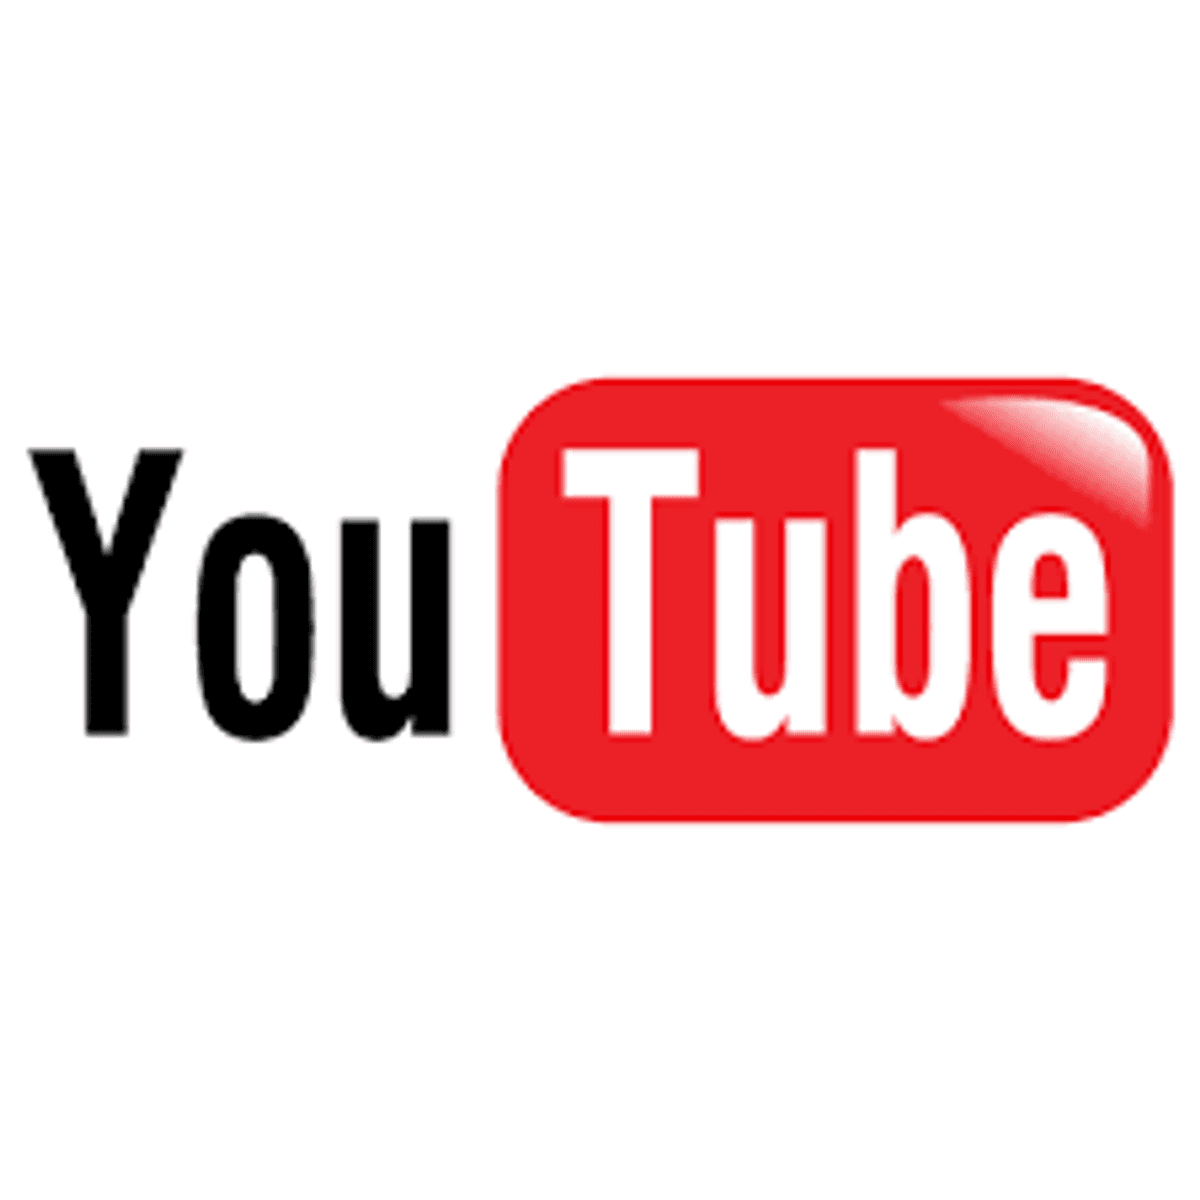 Rusland dreigt met blokkade YouTube image